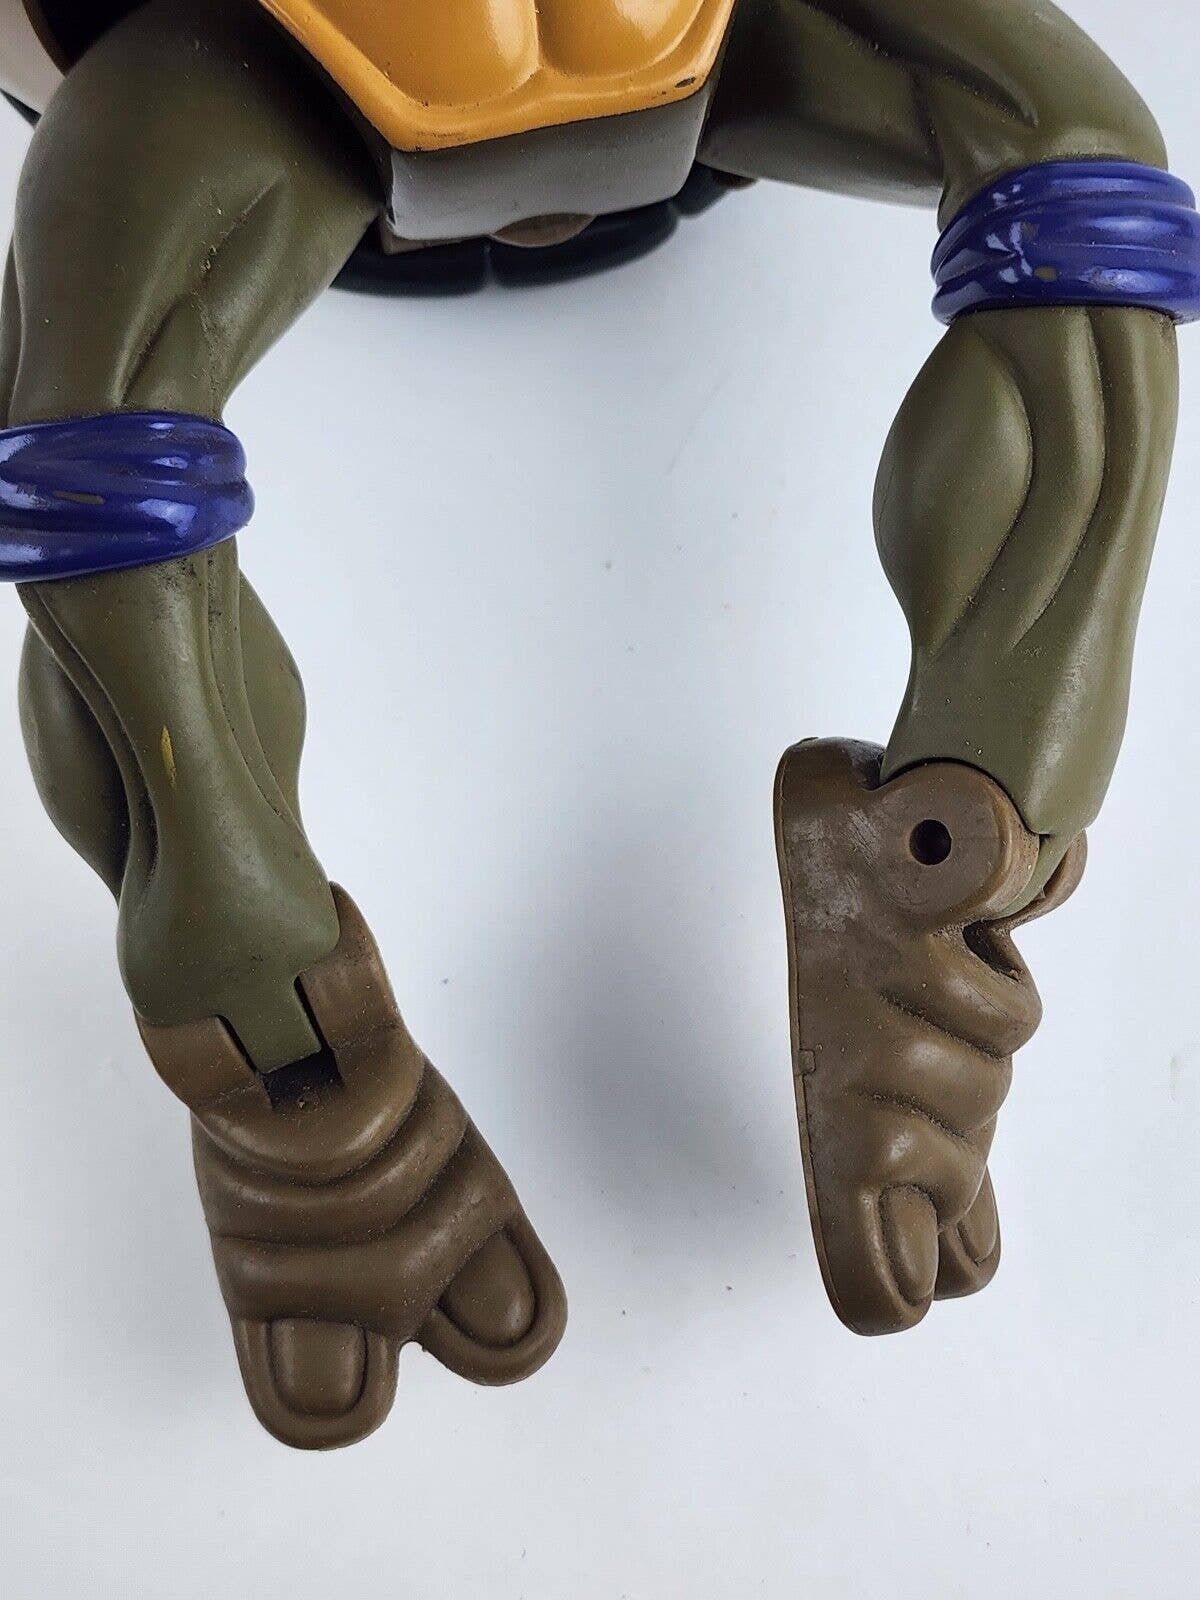 Giant Donatello ‐ Playmates Toys